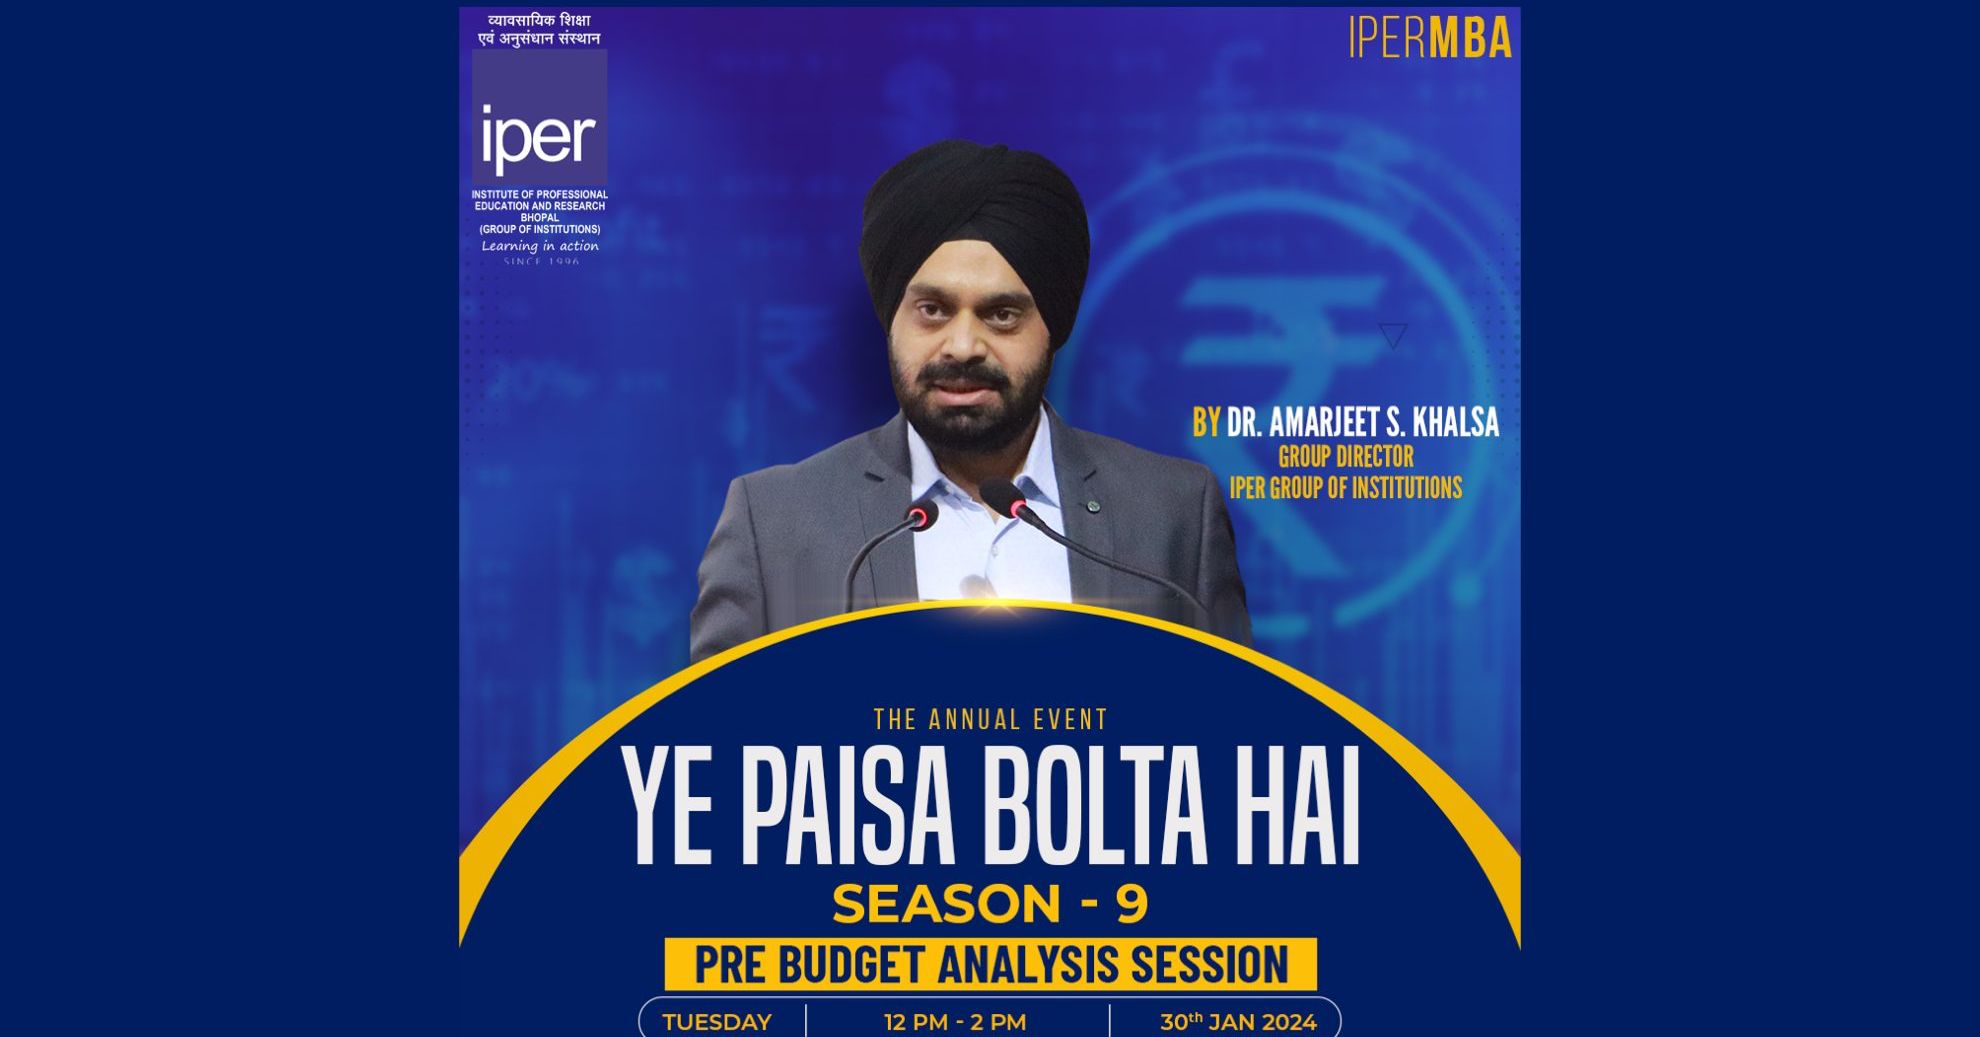 Ye Paisa Bolta Hai Season 9 at IPER MBA